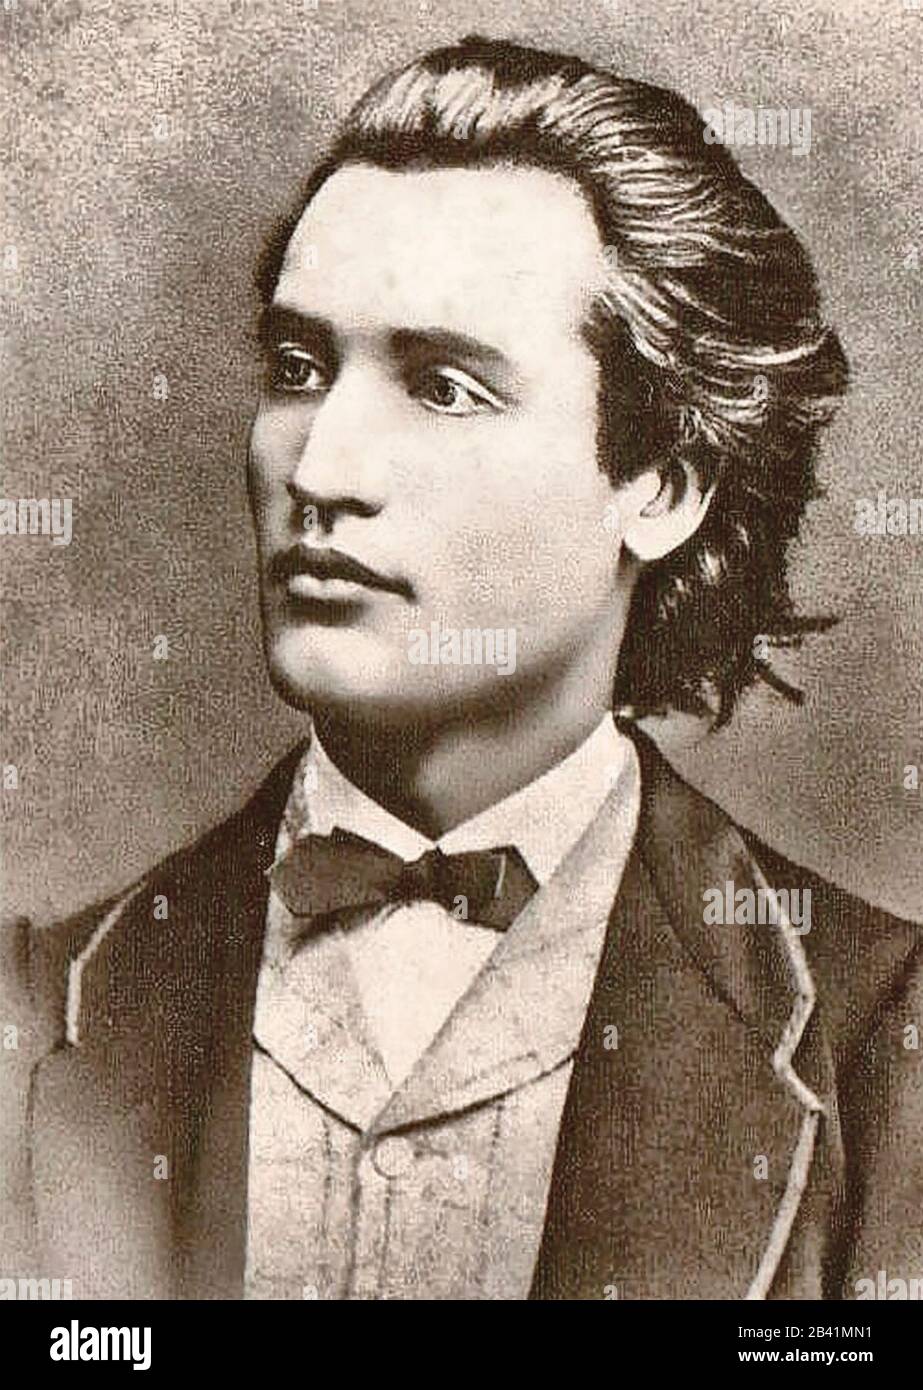 Portrait de Mihai Eminescu - photo prise par Jan Tomas (1841-1912) à Prague, 1869 Banque D'Images